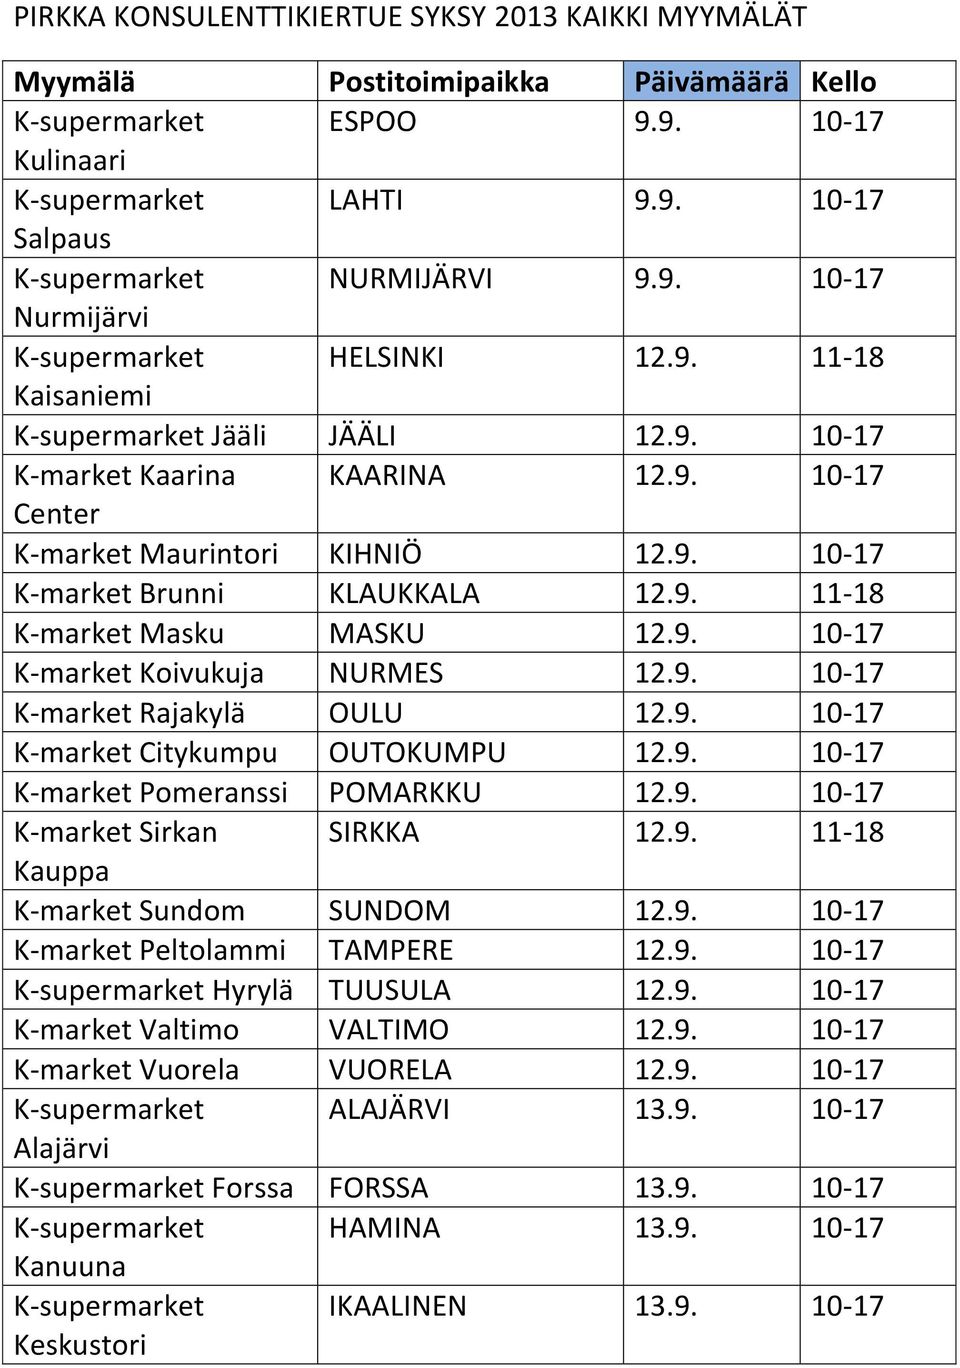 9. 11-18 K-market Masku MASKU 12.9. 10-17 K-market Koivukuja NURMES 12.9. 10-17 K-market Rajakylä OULU 12.9. 10-17 K-market Citykumpu OUTOKUMPU 12.9. 10-17 K-market Pomeranssi POMARKKU 12.9. 10-17 K-market Sirkan SIRKKA 12.